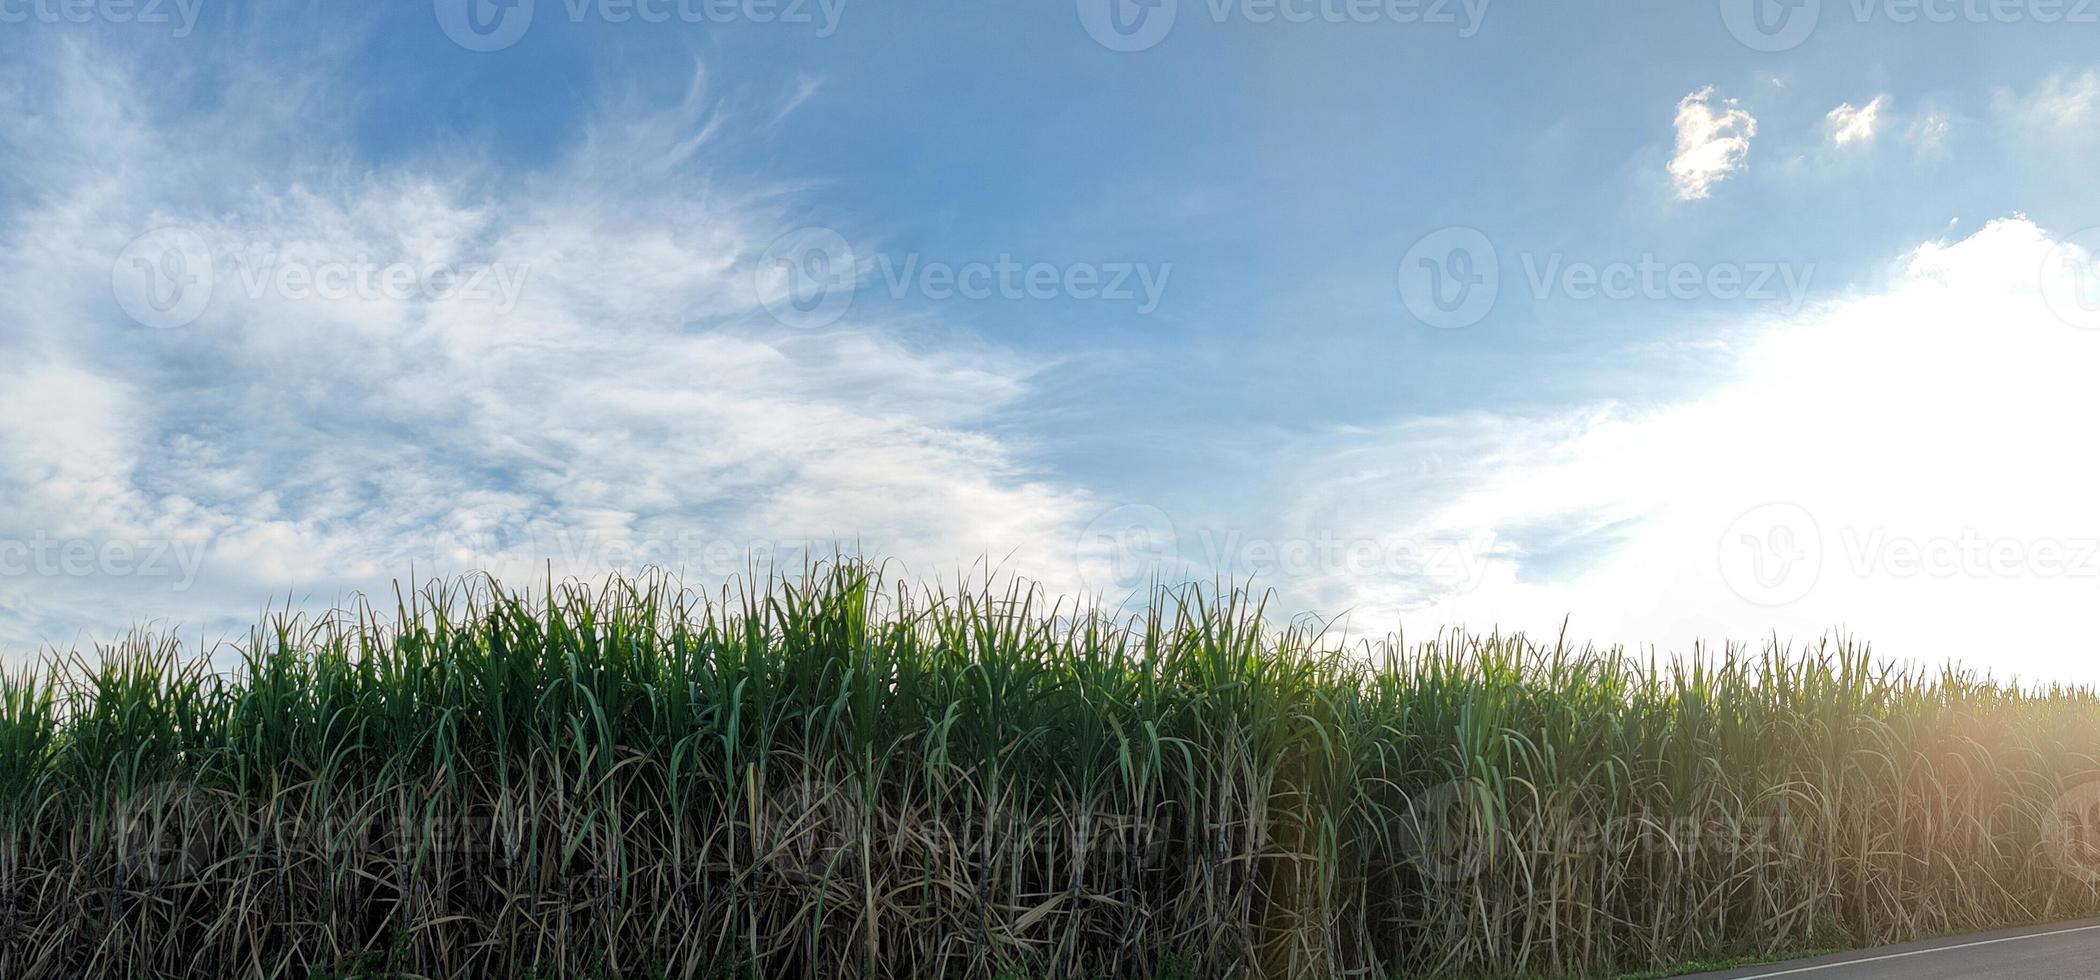 champs de canne à sucre et ciel bleu photo